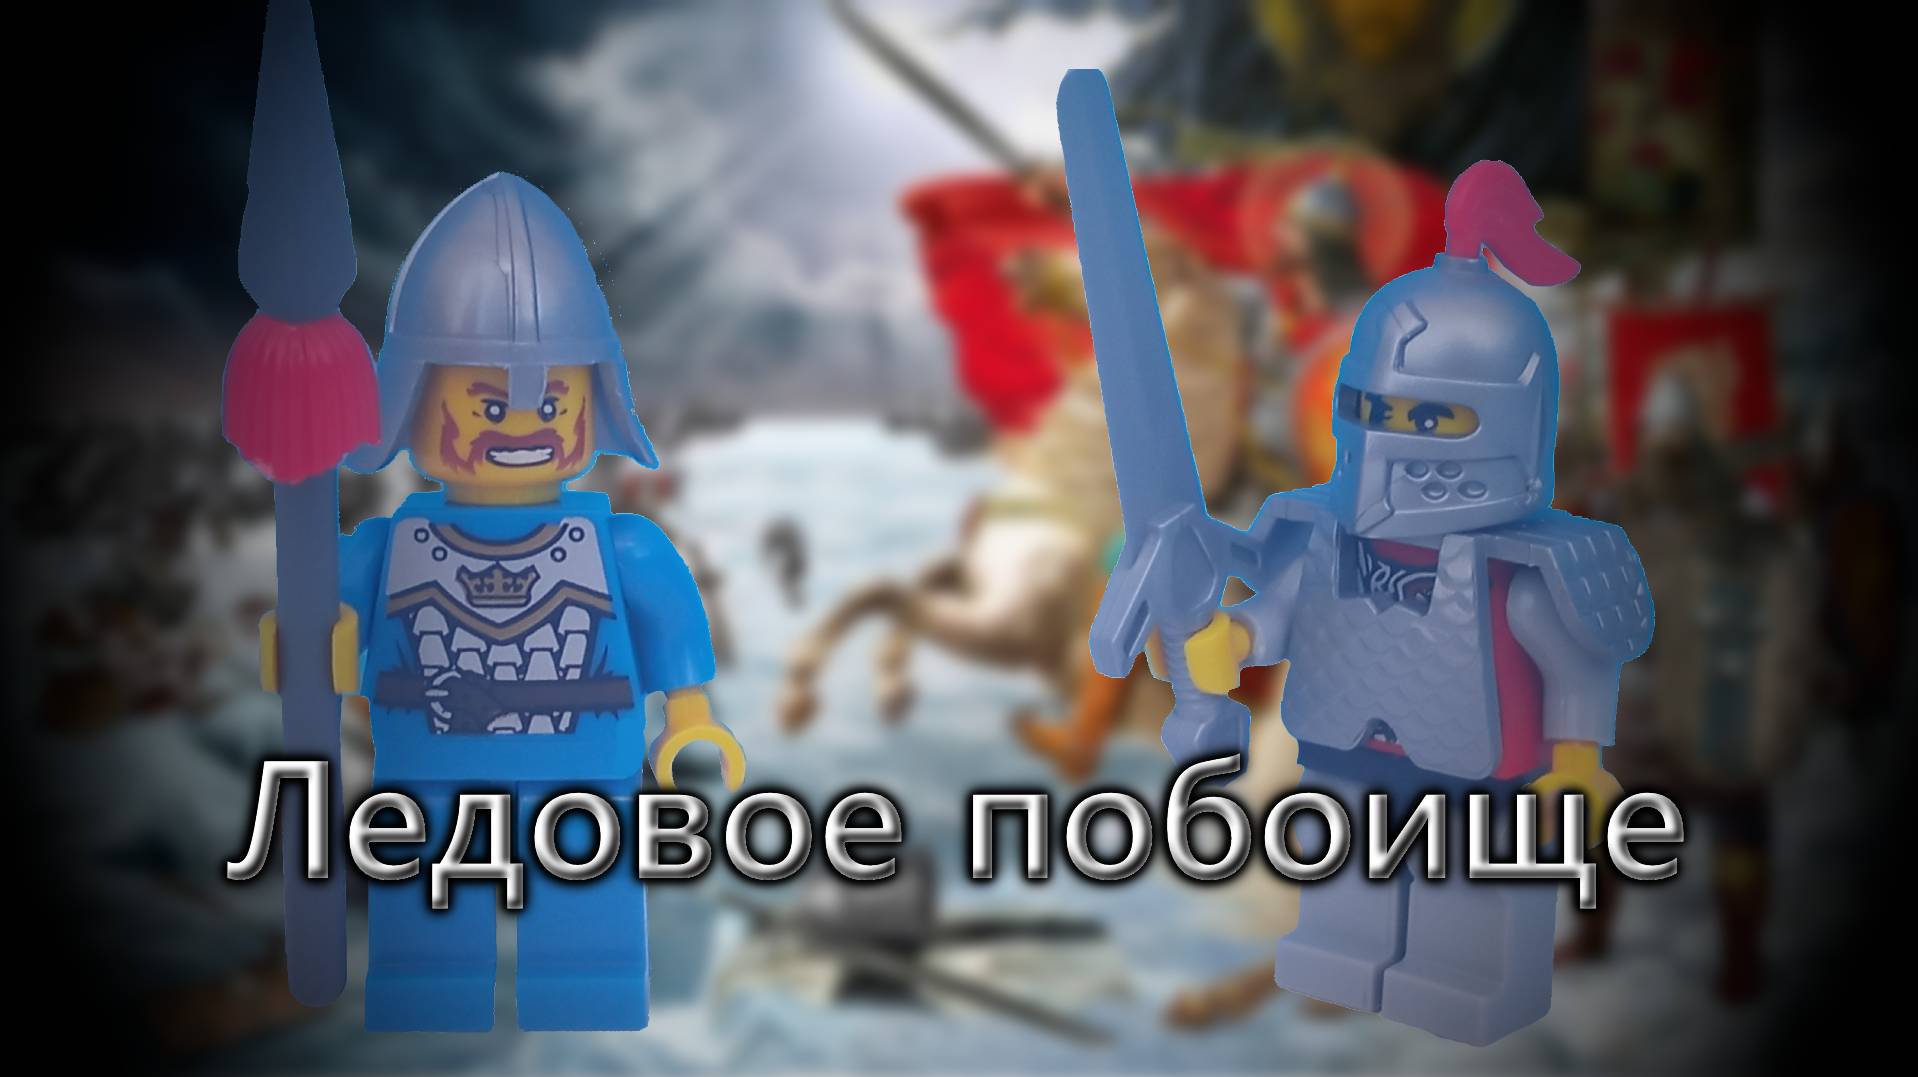 Лего Ледовое побоище (анимация)